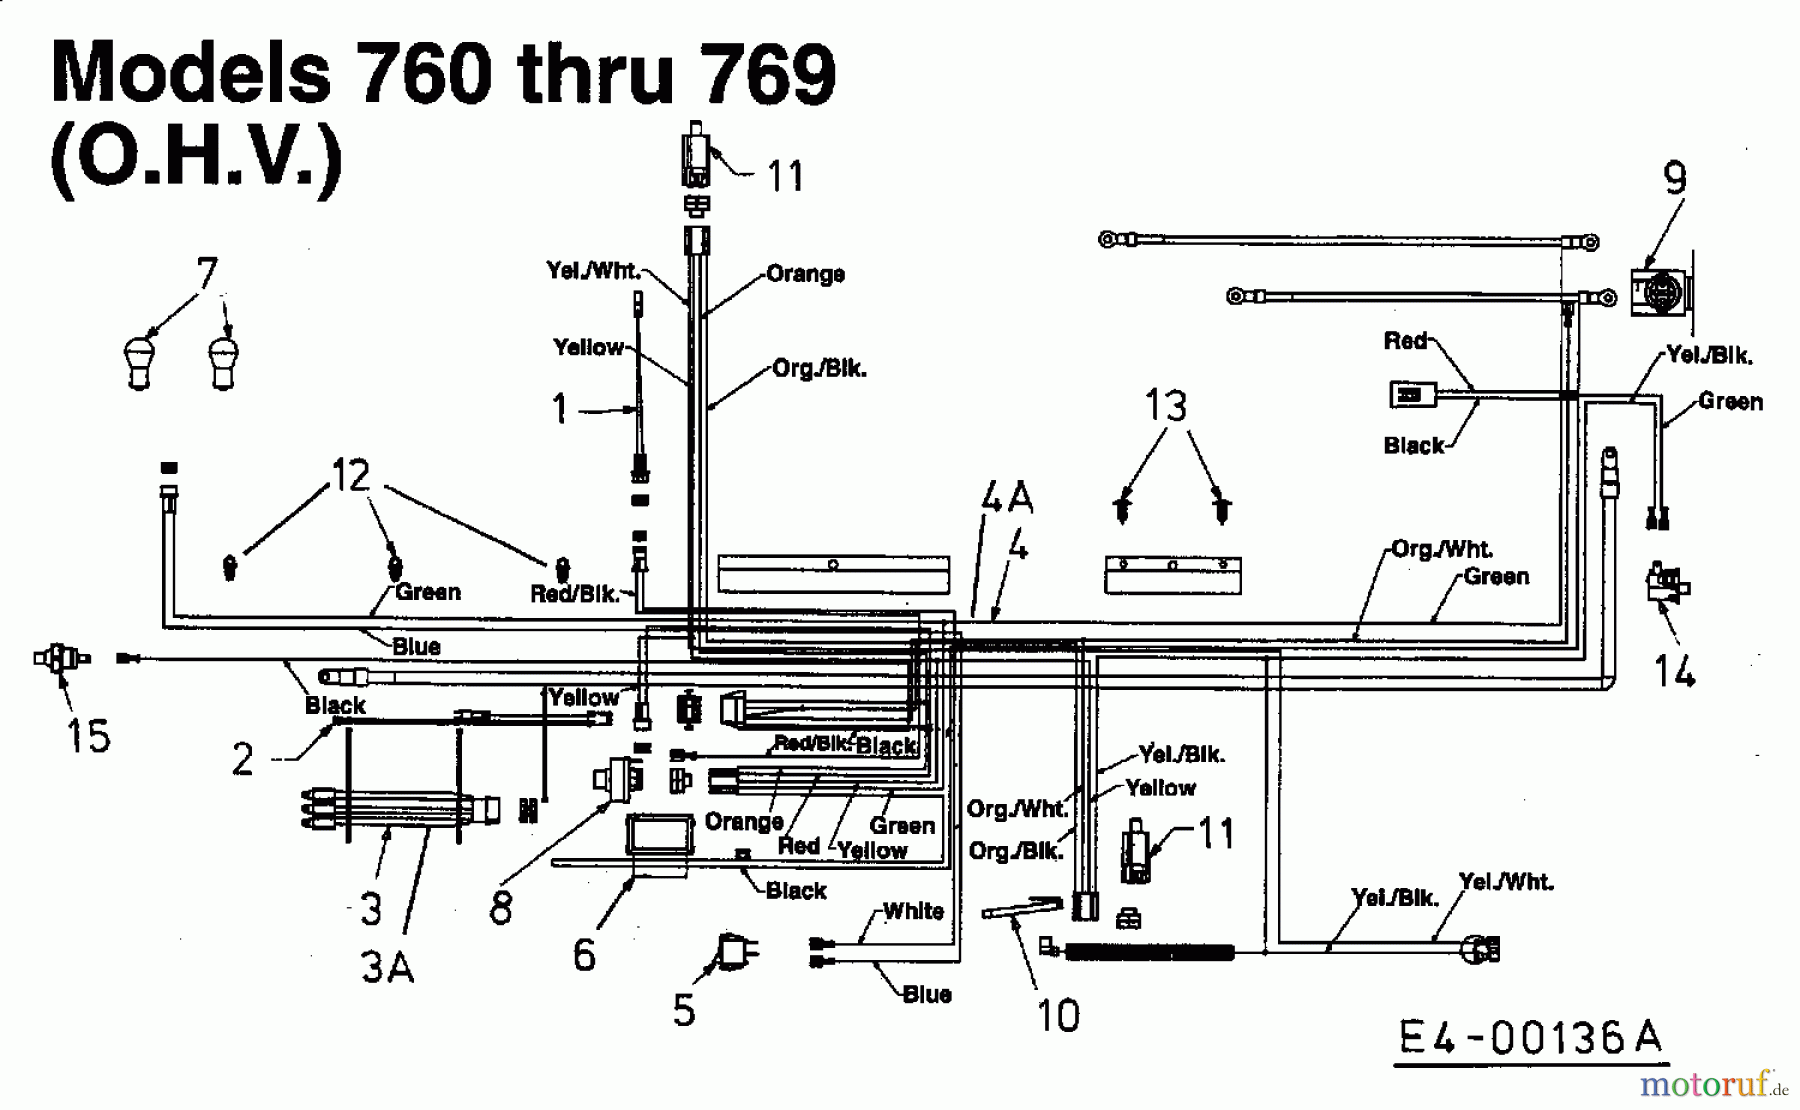  Harry Tracteurs de pelouse 131 B 13 13DA763N662  (2000) Plan electrique pour O.H.V.